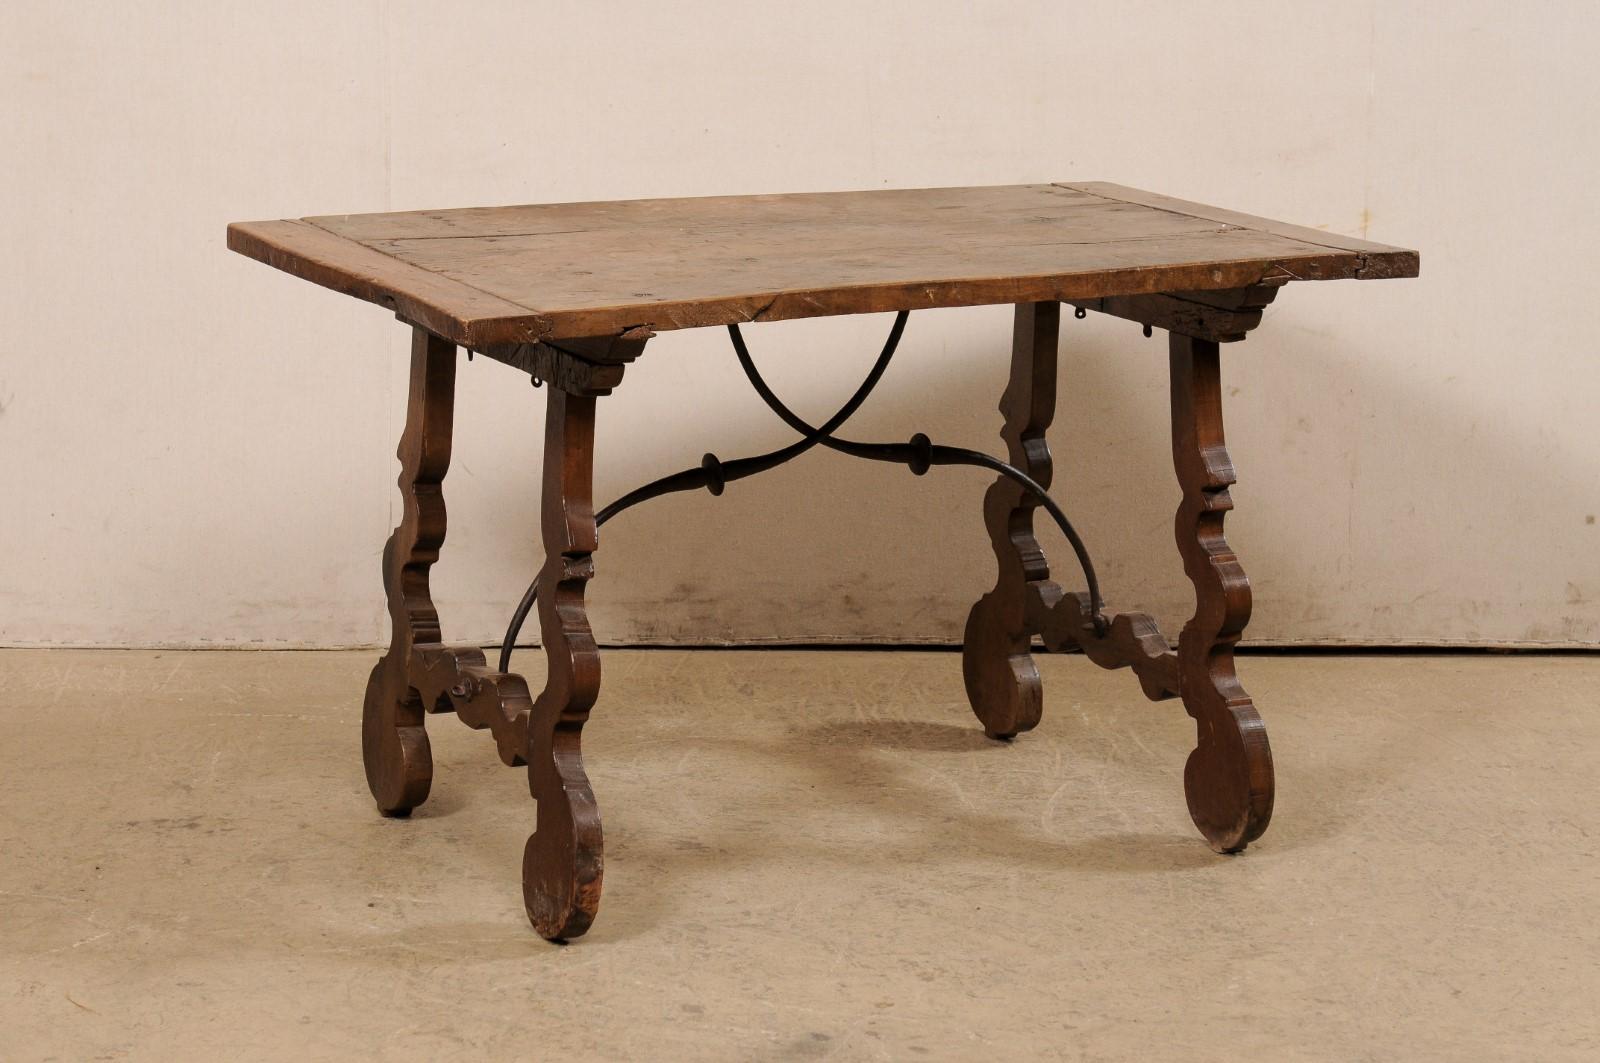 Table italienne en noyer fratino avec pieds en lyre et traverse en fer du début du 19ème siècle. Cette table ancienne d'Italie, de style typiquement fratino, présente un plateau en noyer, de forme rectangulaire, reposant sur une paire de pieds